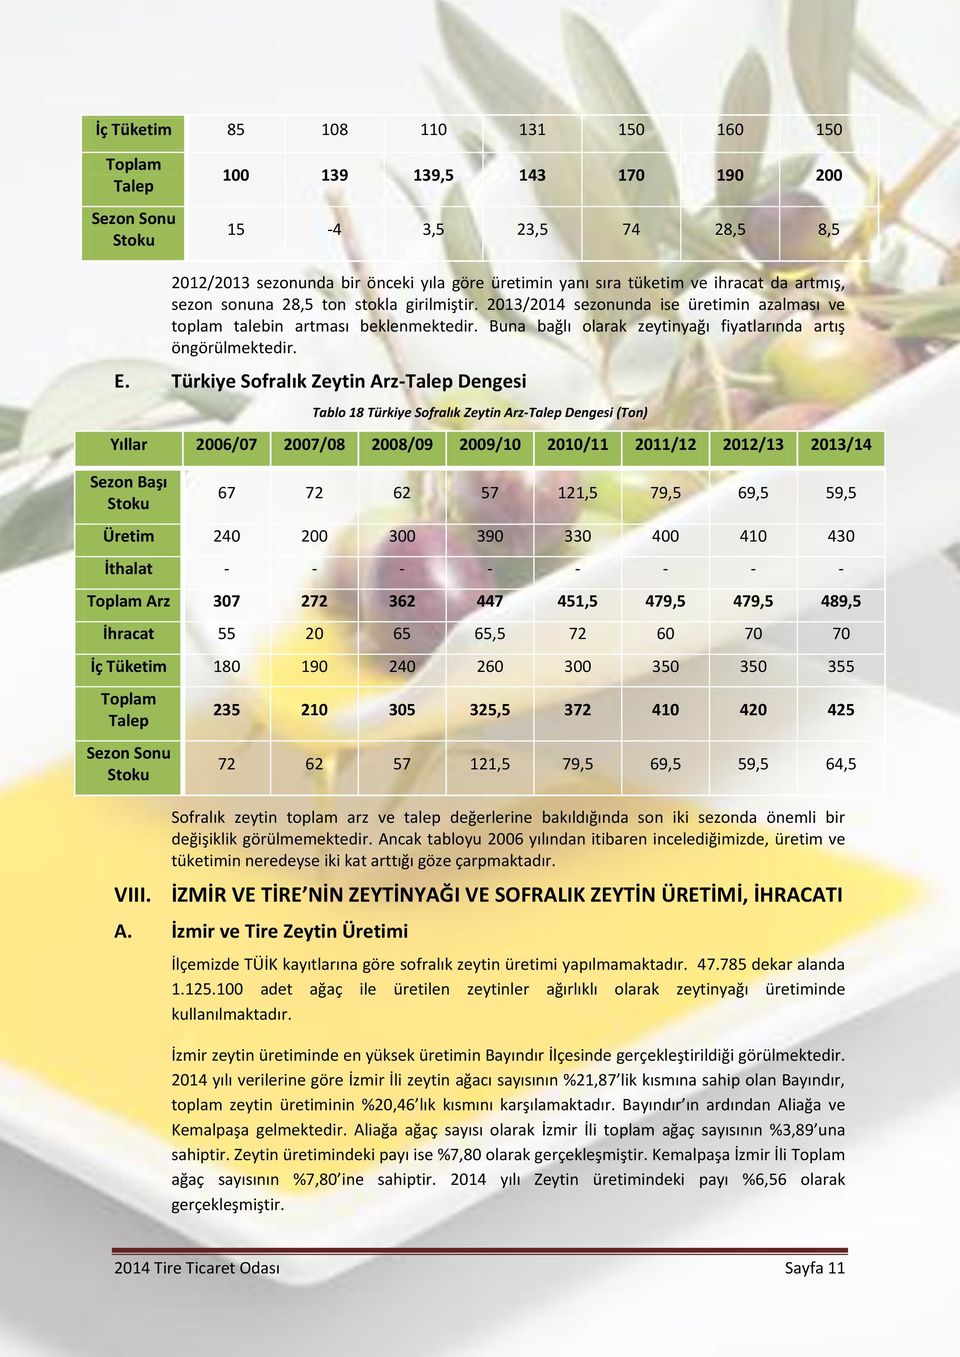 Buna bağlı olarak zeytinyağı fiyatlarında artış öngörülmektedir. E.